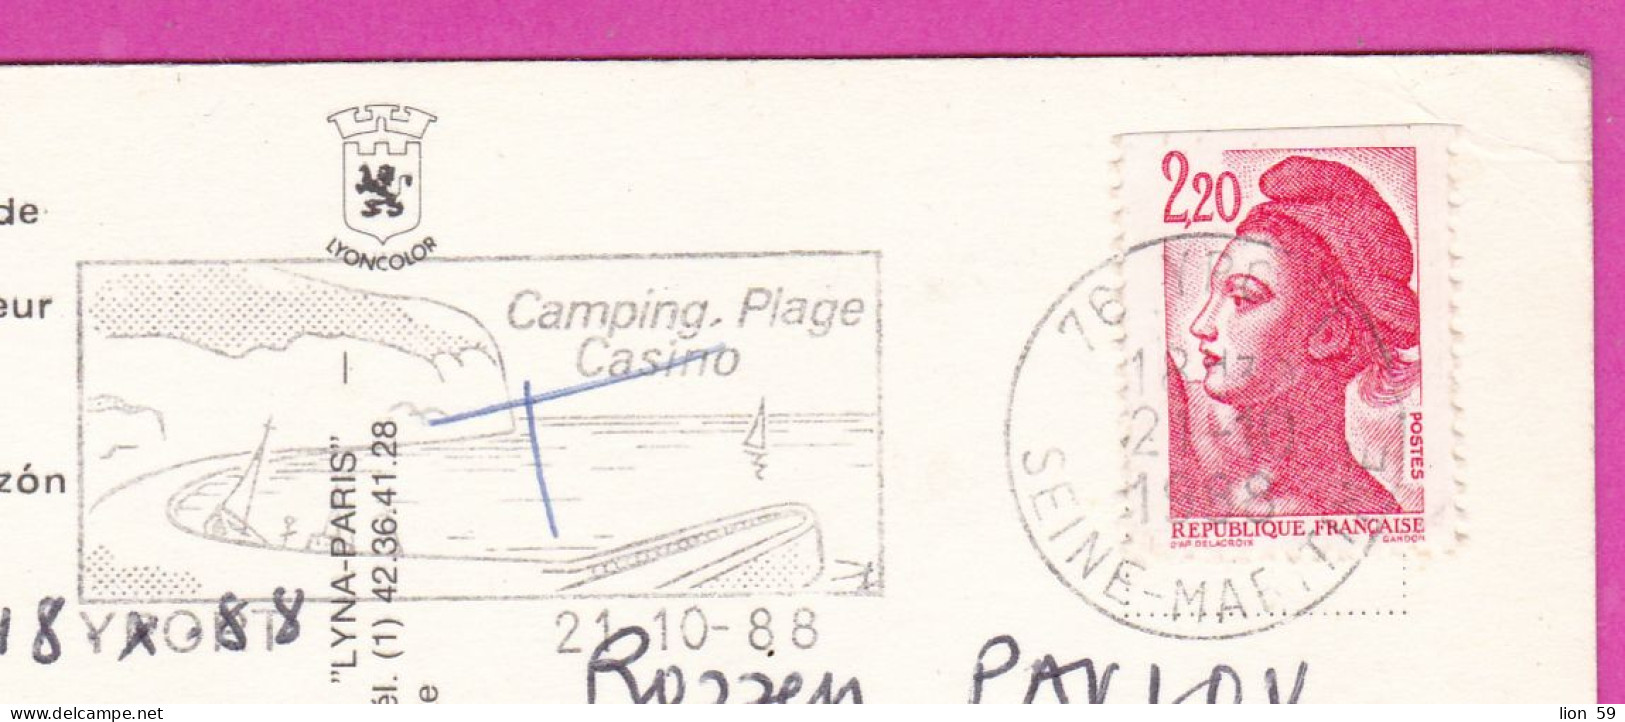 294233 / France - PARIS Basilique Du Sacré-Cœur PC 1988 Postage Due USED 2.20 Fr. Liberty Of Gandon Flamme Yport Camping - 1982-1990 Liberty Of Gandon